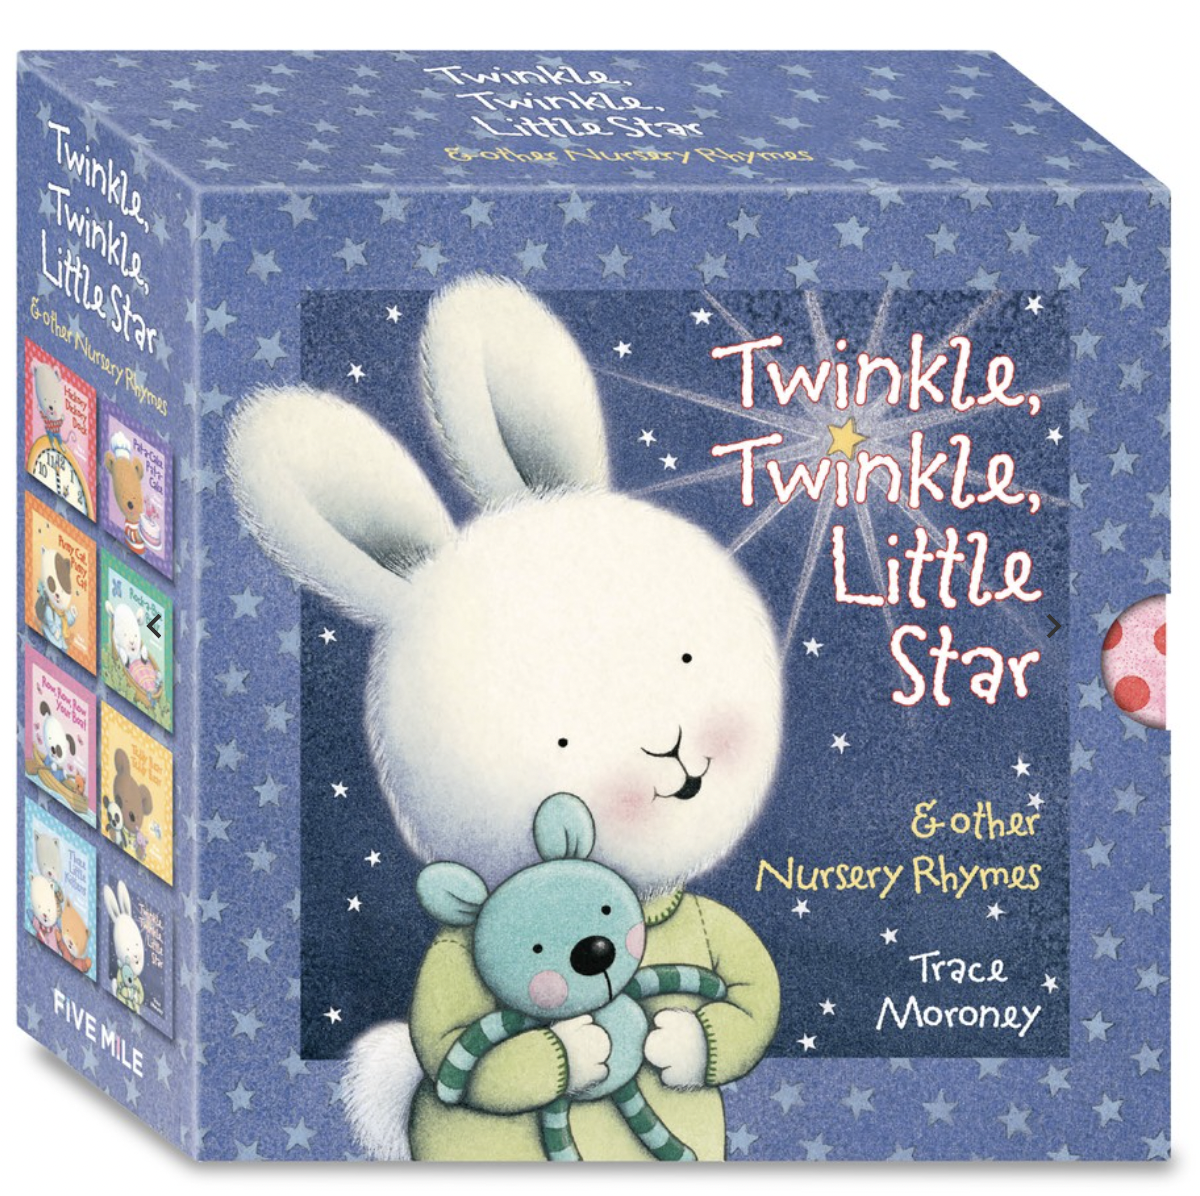 Twinkle Twinkle Litter Star & Other Nursery Rhyme Board Books (8 Book Slipcase) by Trace Moroney